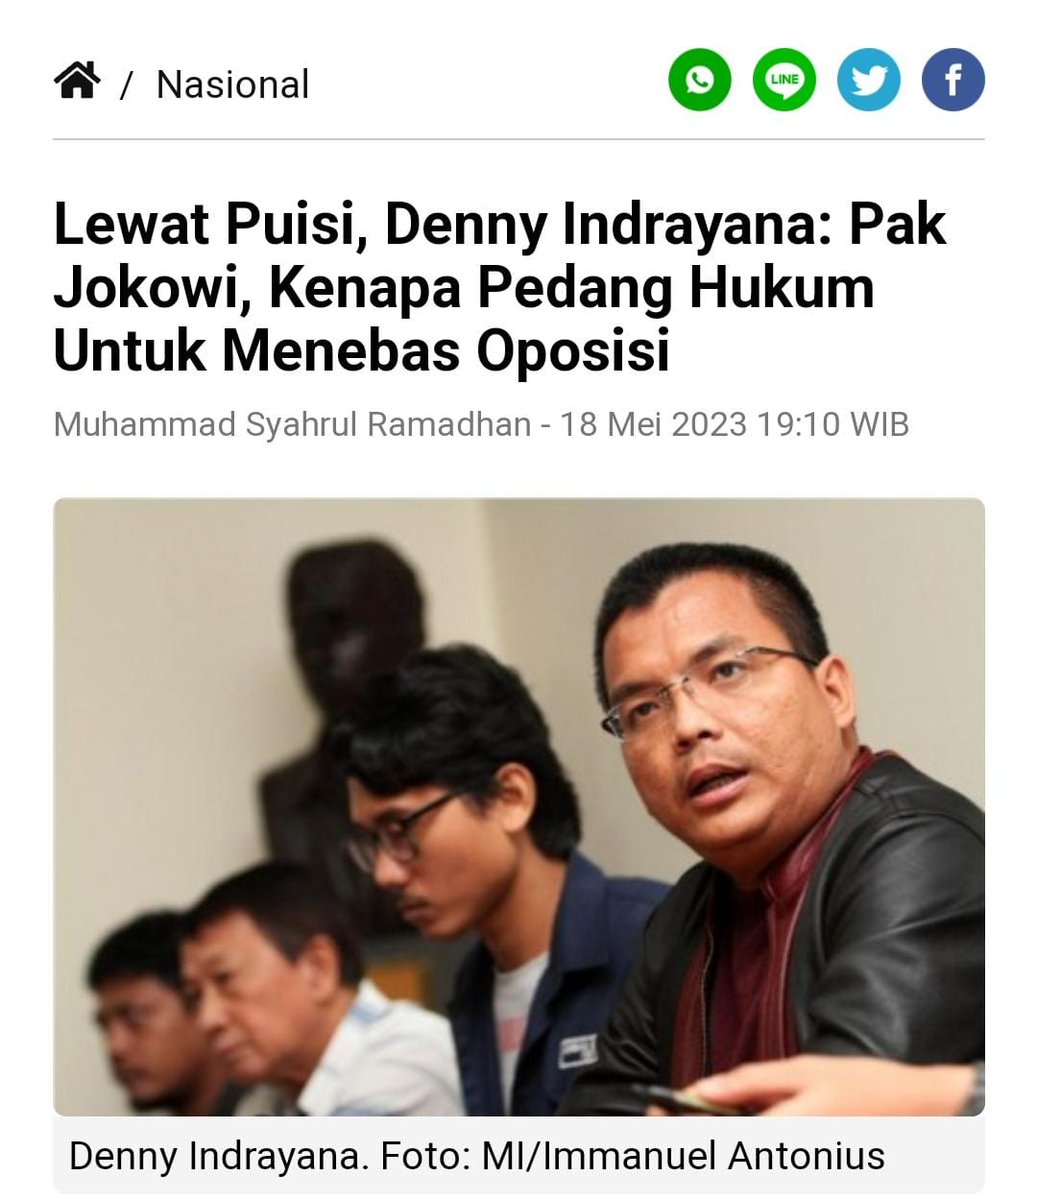 Yang perlu ditanyakan nih, kenapa pak Jokowi pedang hukum untuk menebas oposisi.
#NasDemPilihannya